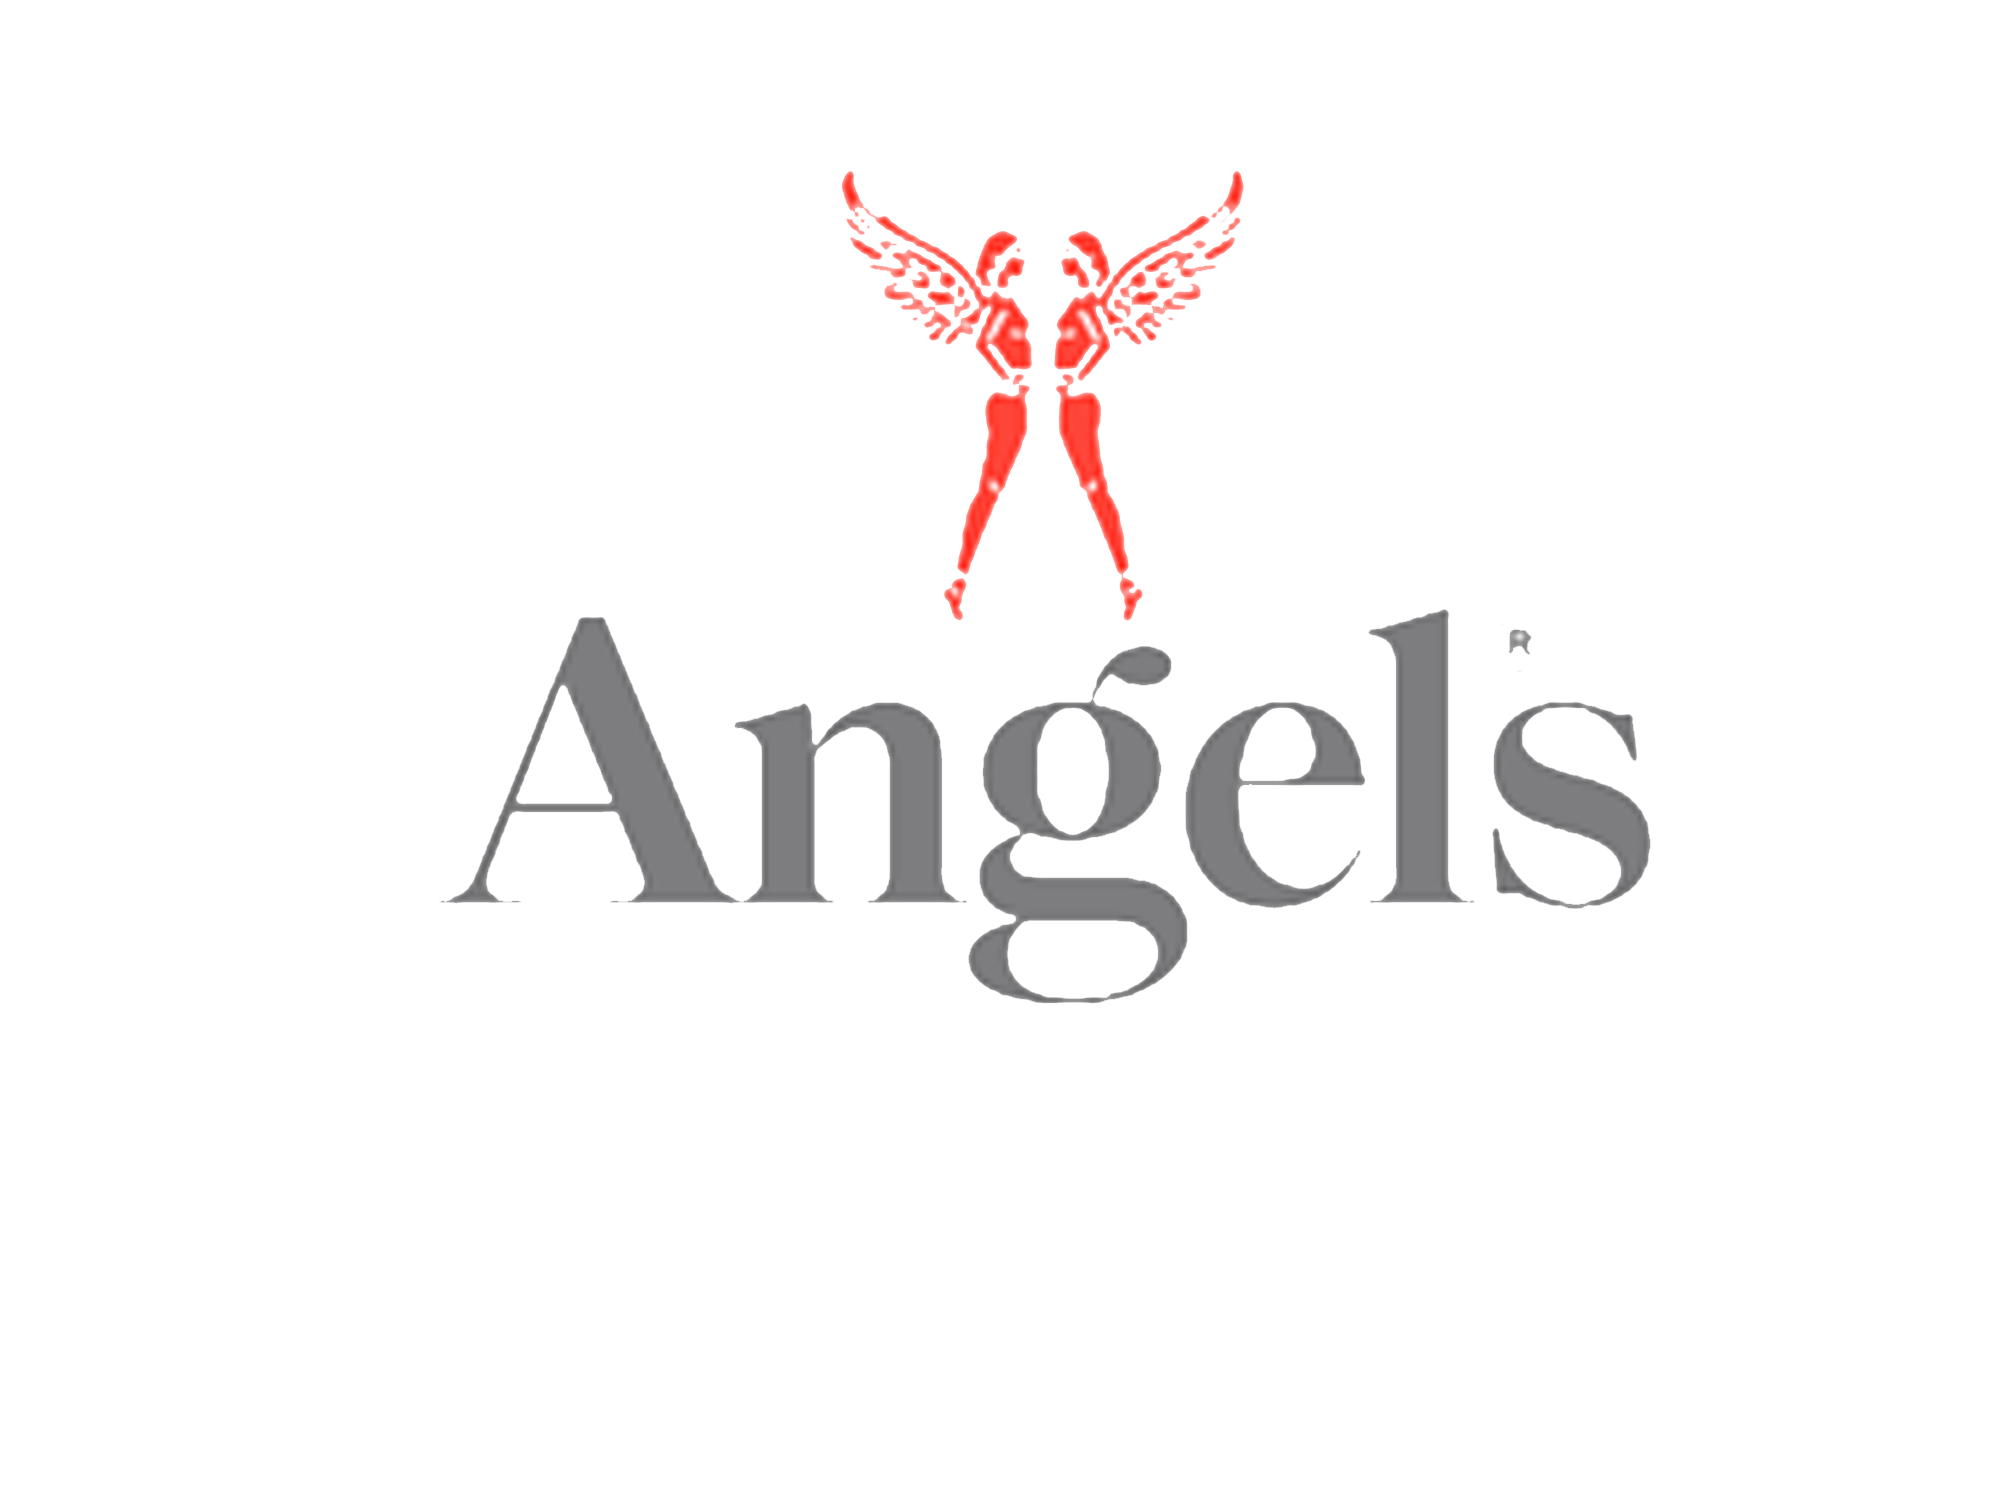 Angels broeken en jeans - logo